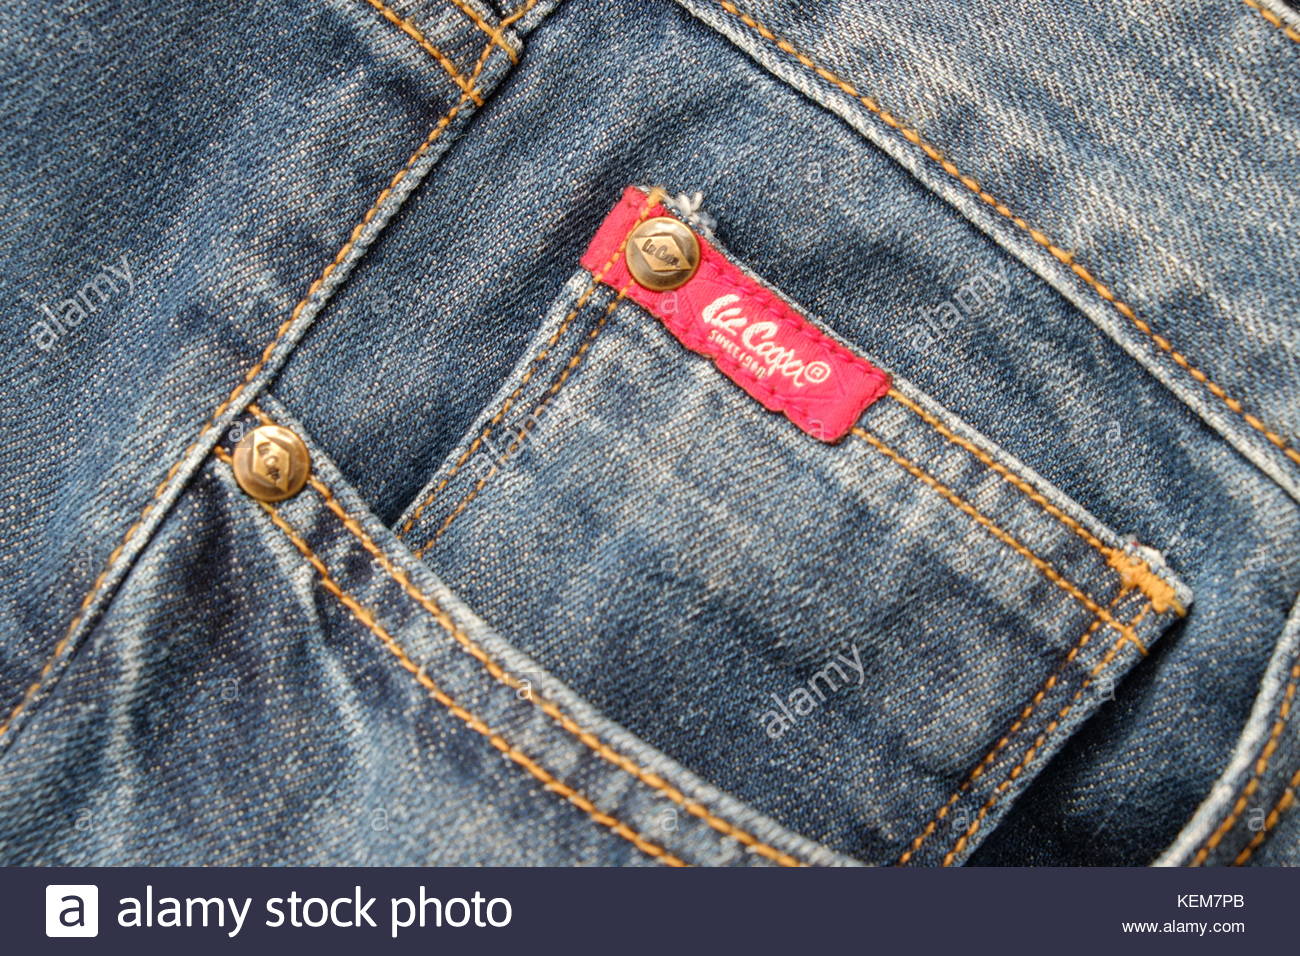 allen cooper jeans price